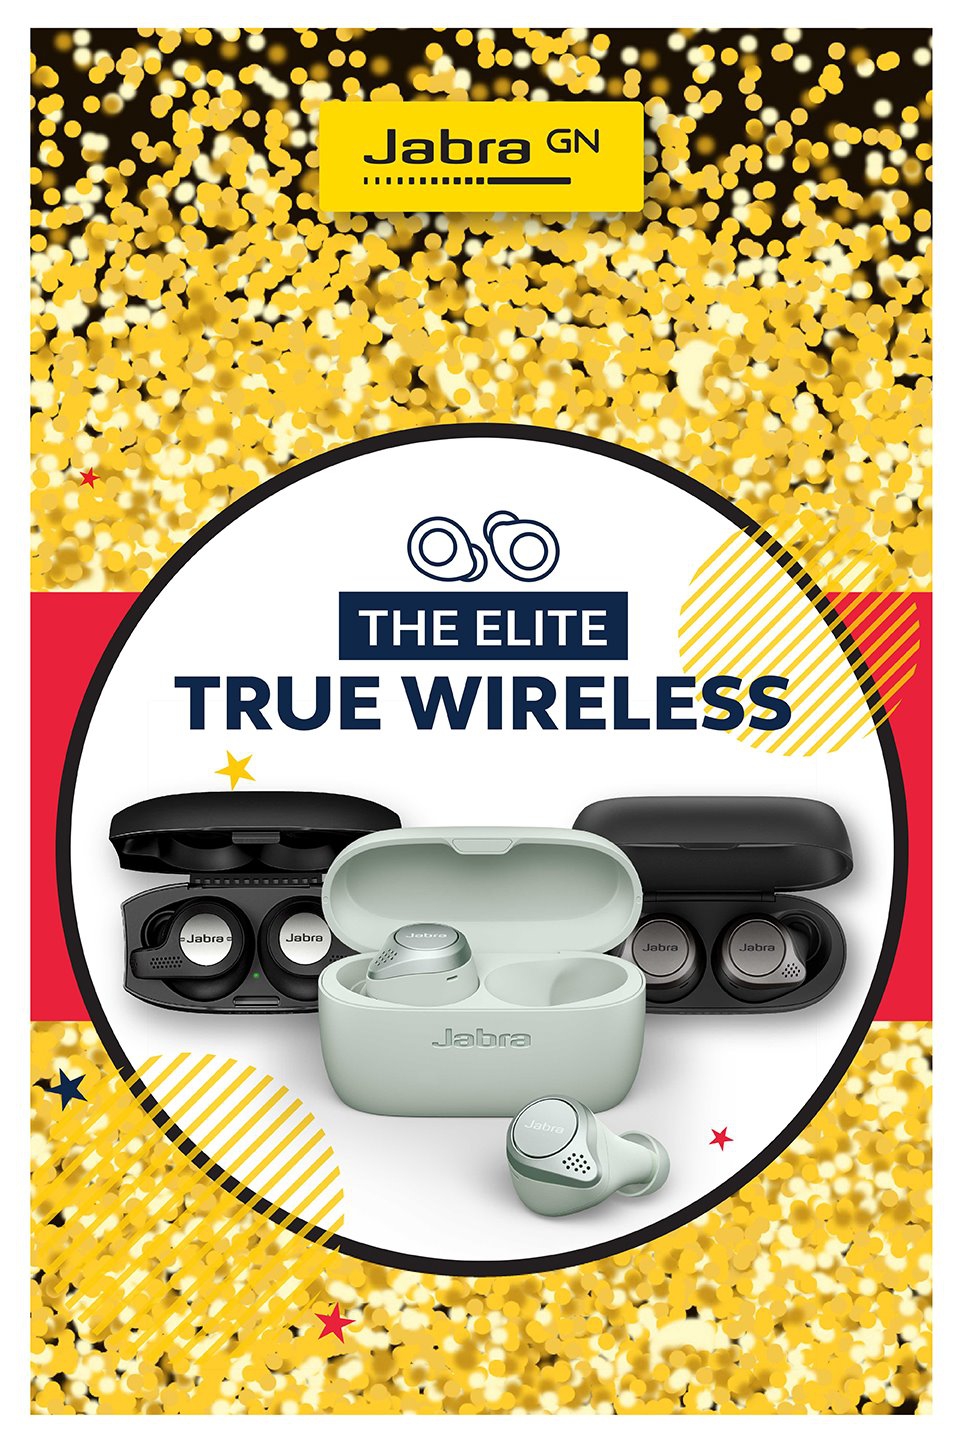 อาร์ทีบีฯ ตอบรับกระแสหูฟัง True Wireless ที่กำลังมาแรง จัดแคมเปญ The Elite True Wireless กระตุ้นตลาดหูฟังไตรมาส 3